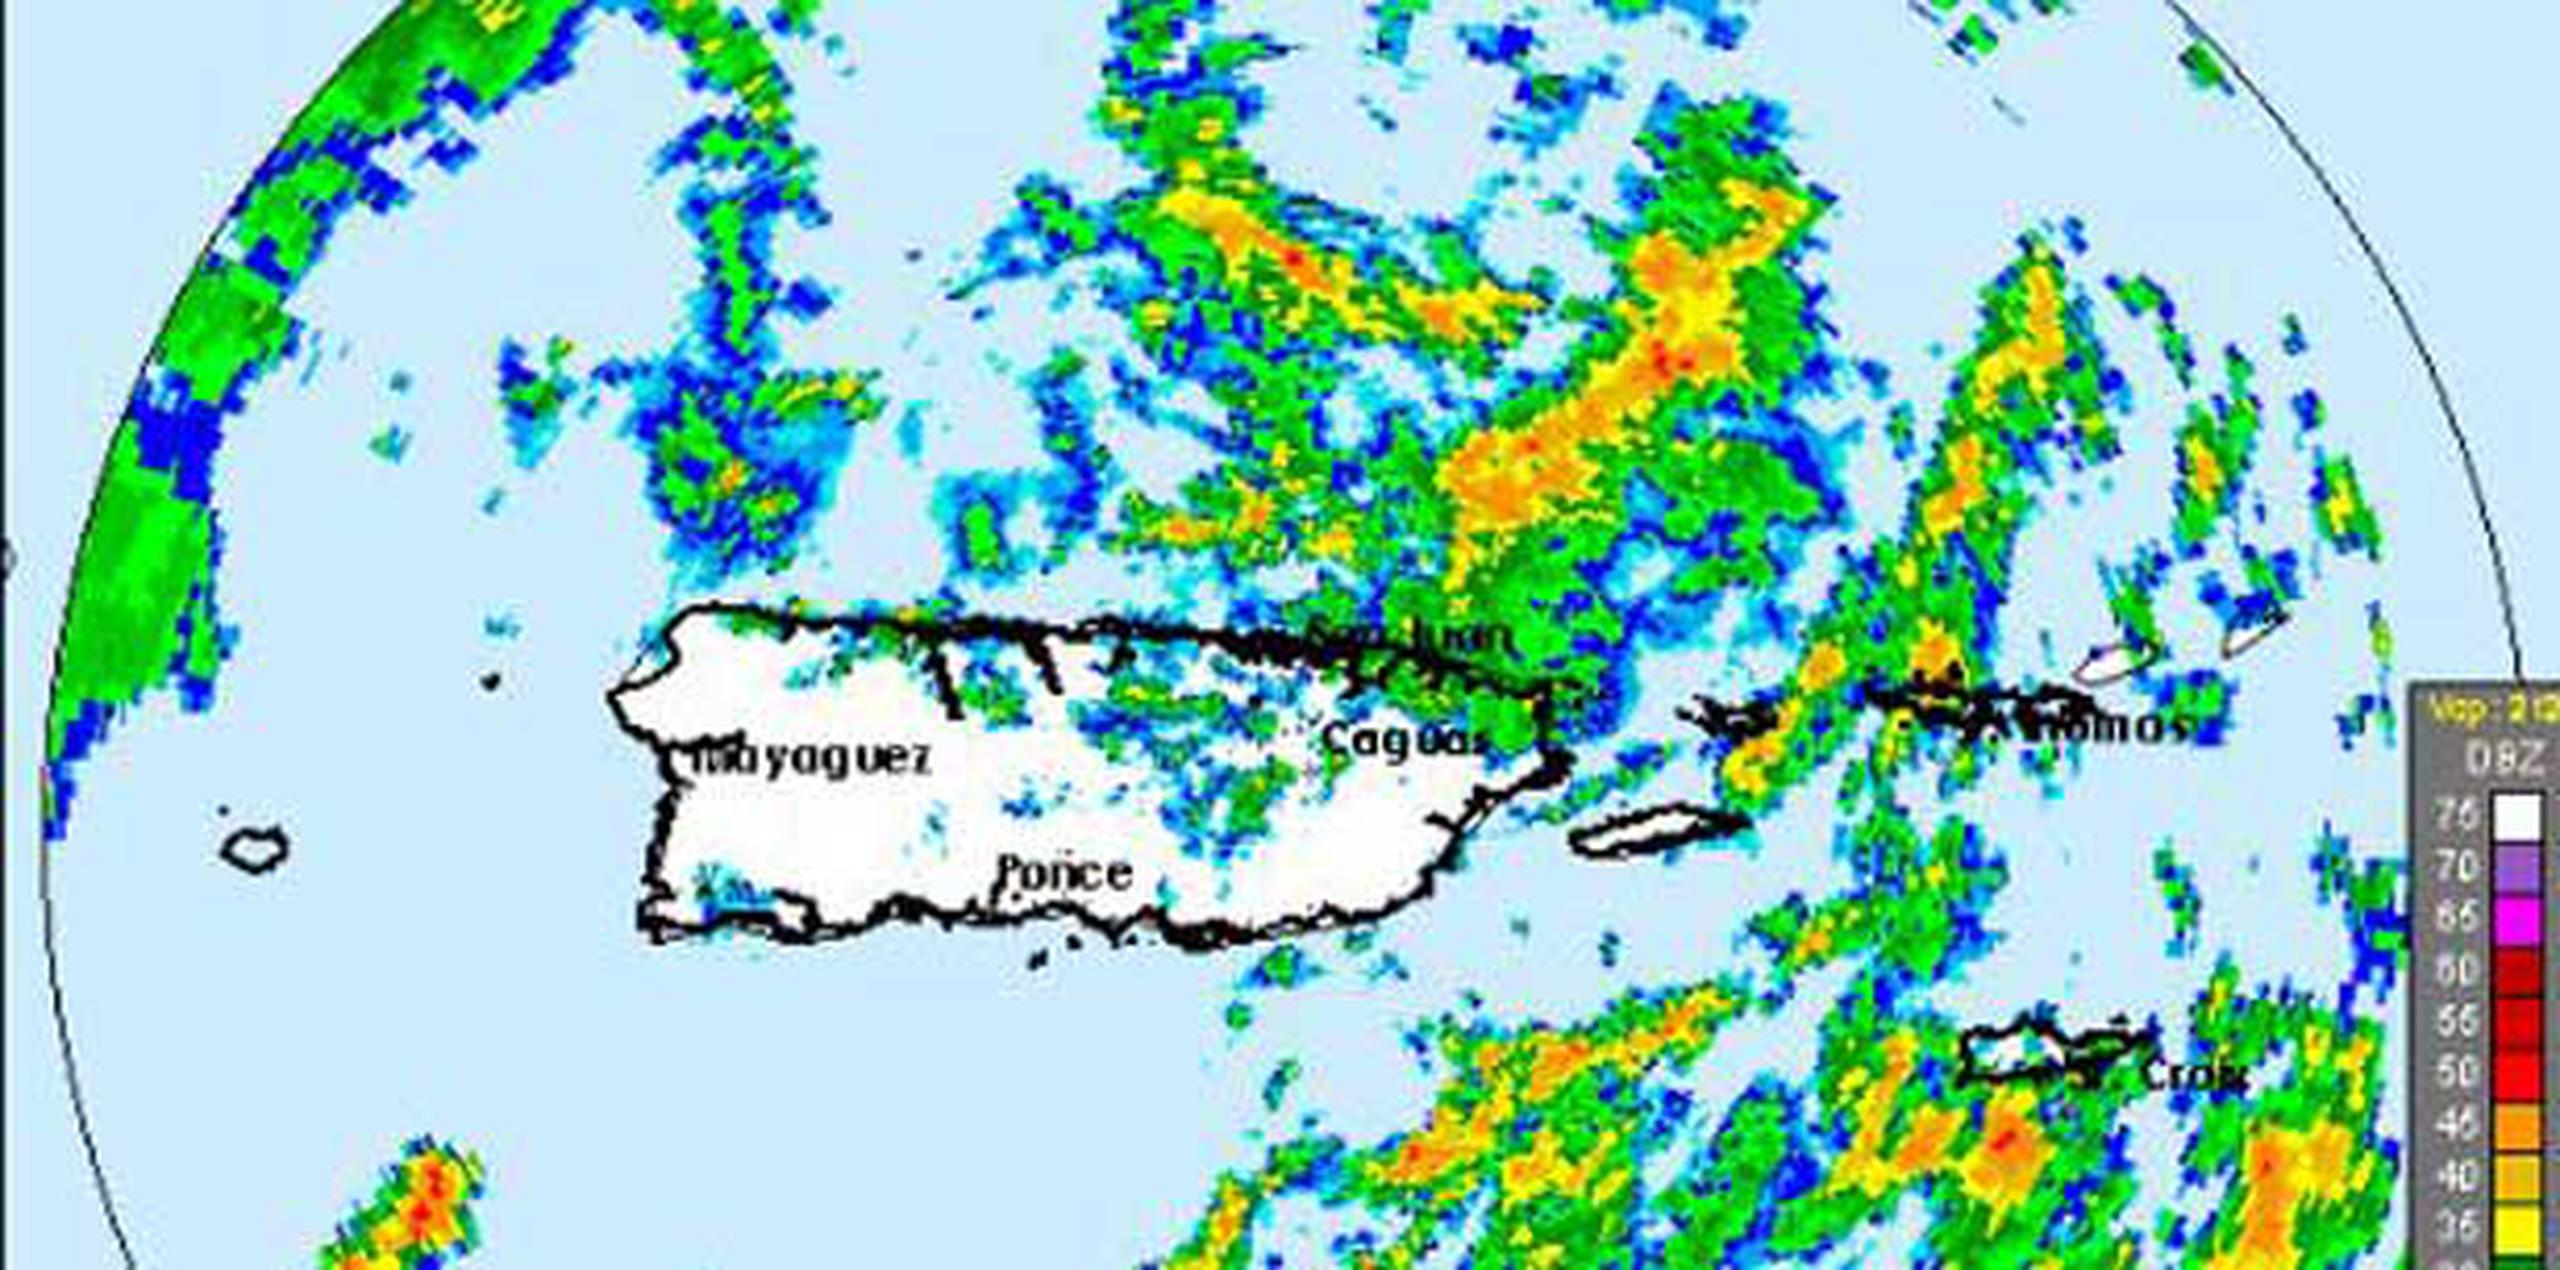 La fuerte lluvia que se registra en horas del mediodía de este viernes, debido al paso de una onda tropical, ha provocado que el Servicio Nacional de Meteorología (SNM) active varias advertencias de inundaciones para el este de la Isla. (NOAA)
